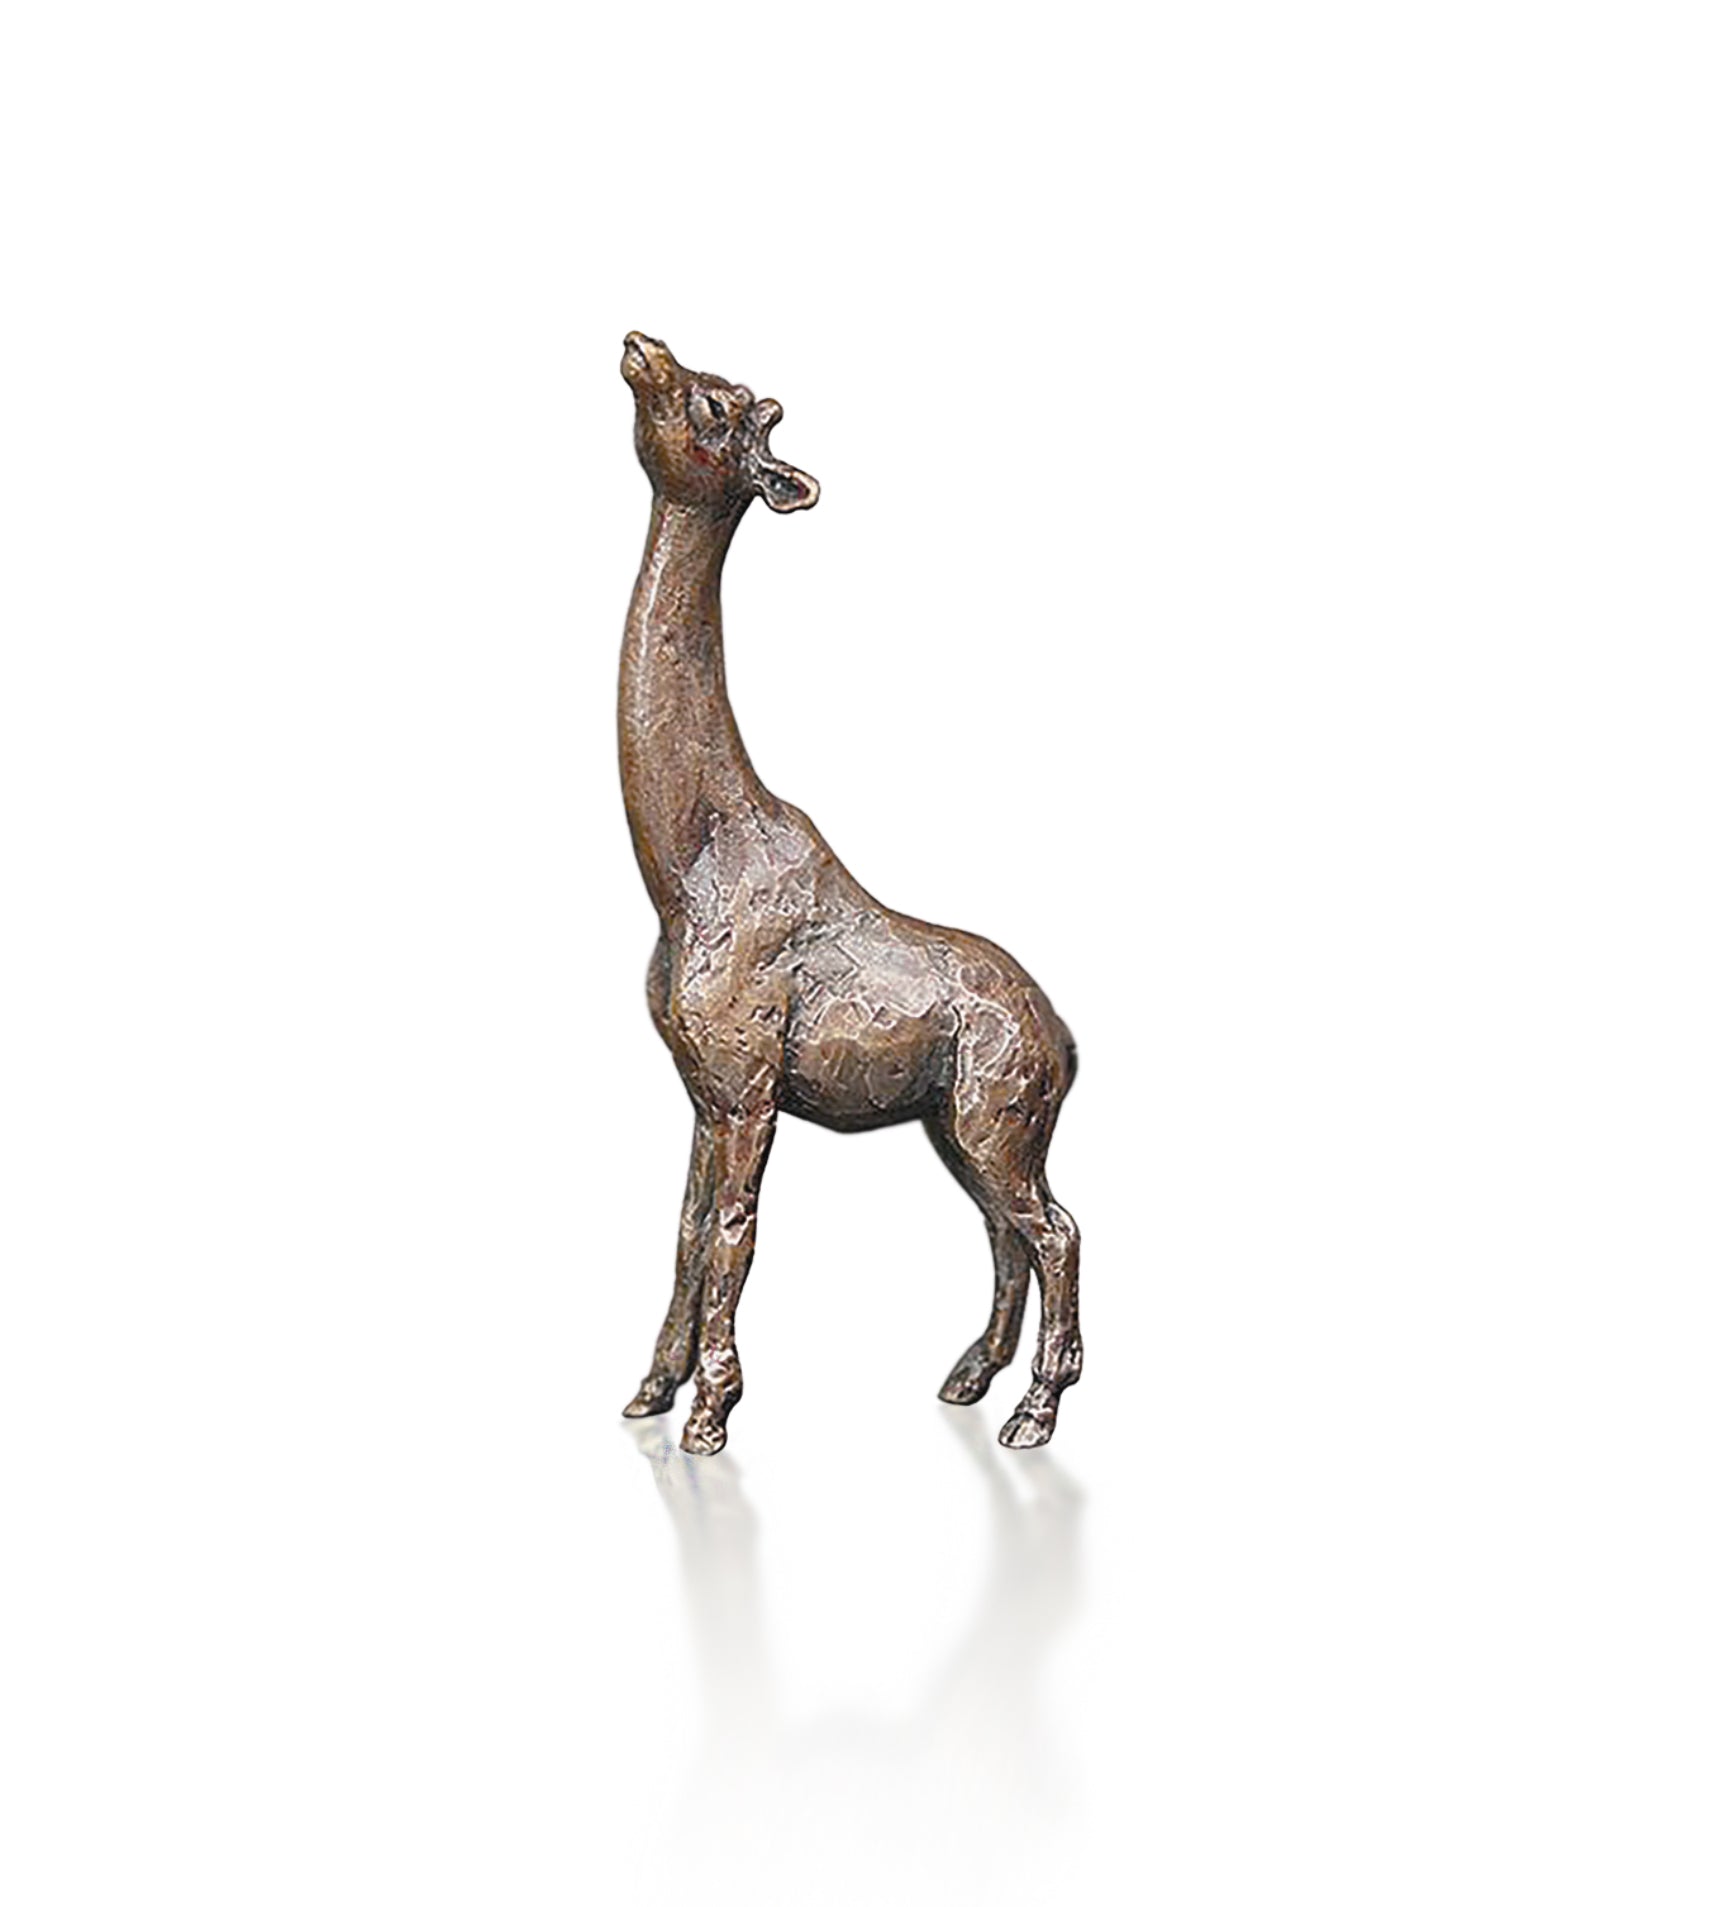 miniature bronze giraffe gift sculpture butler and peach